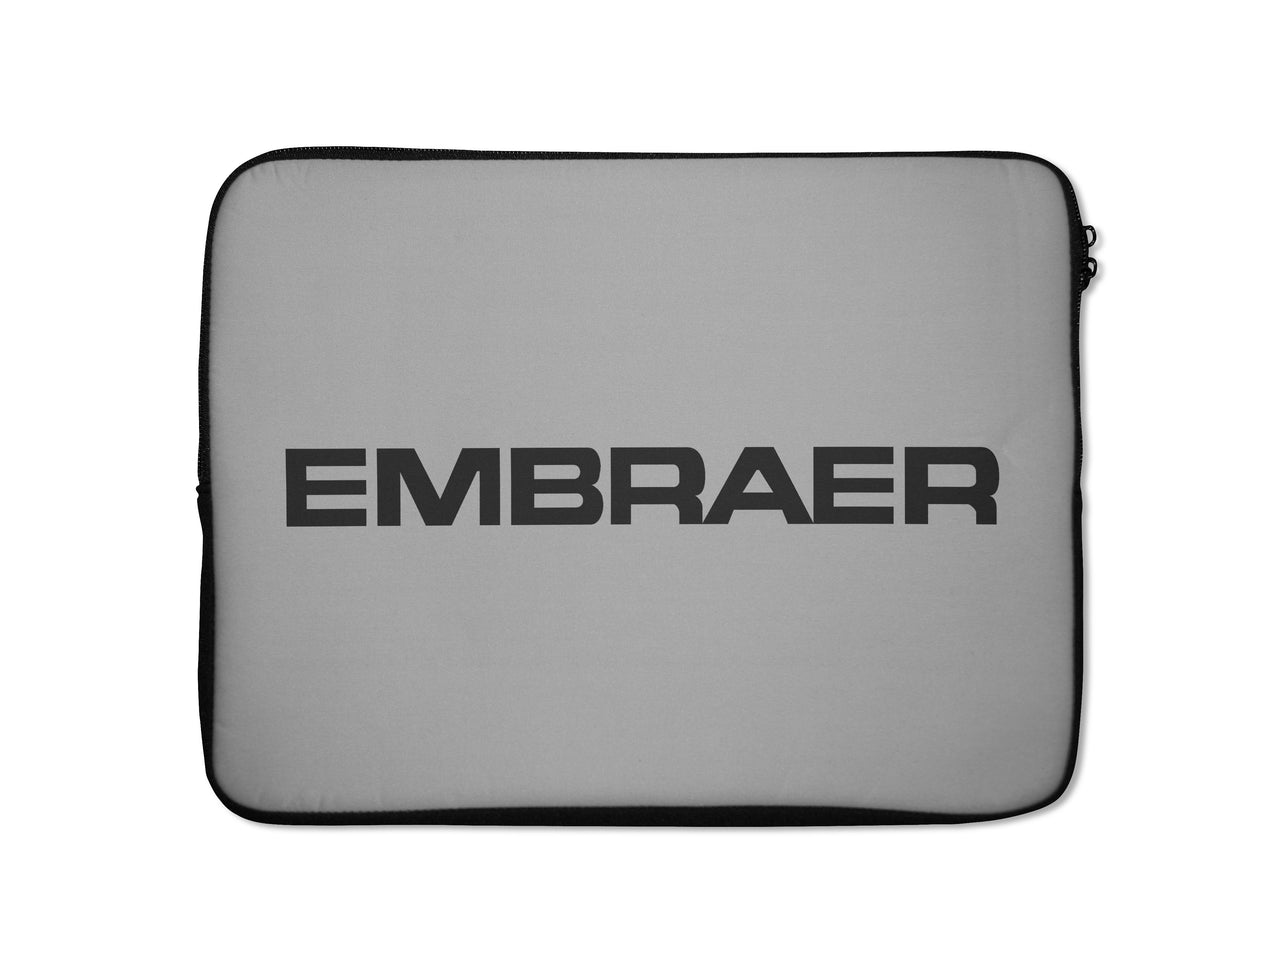 Embraer & Text Designed Laptop & Tablet Cases